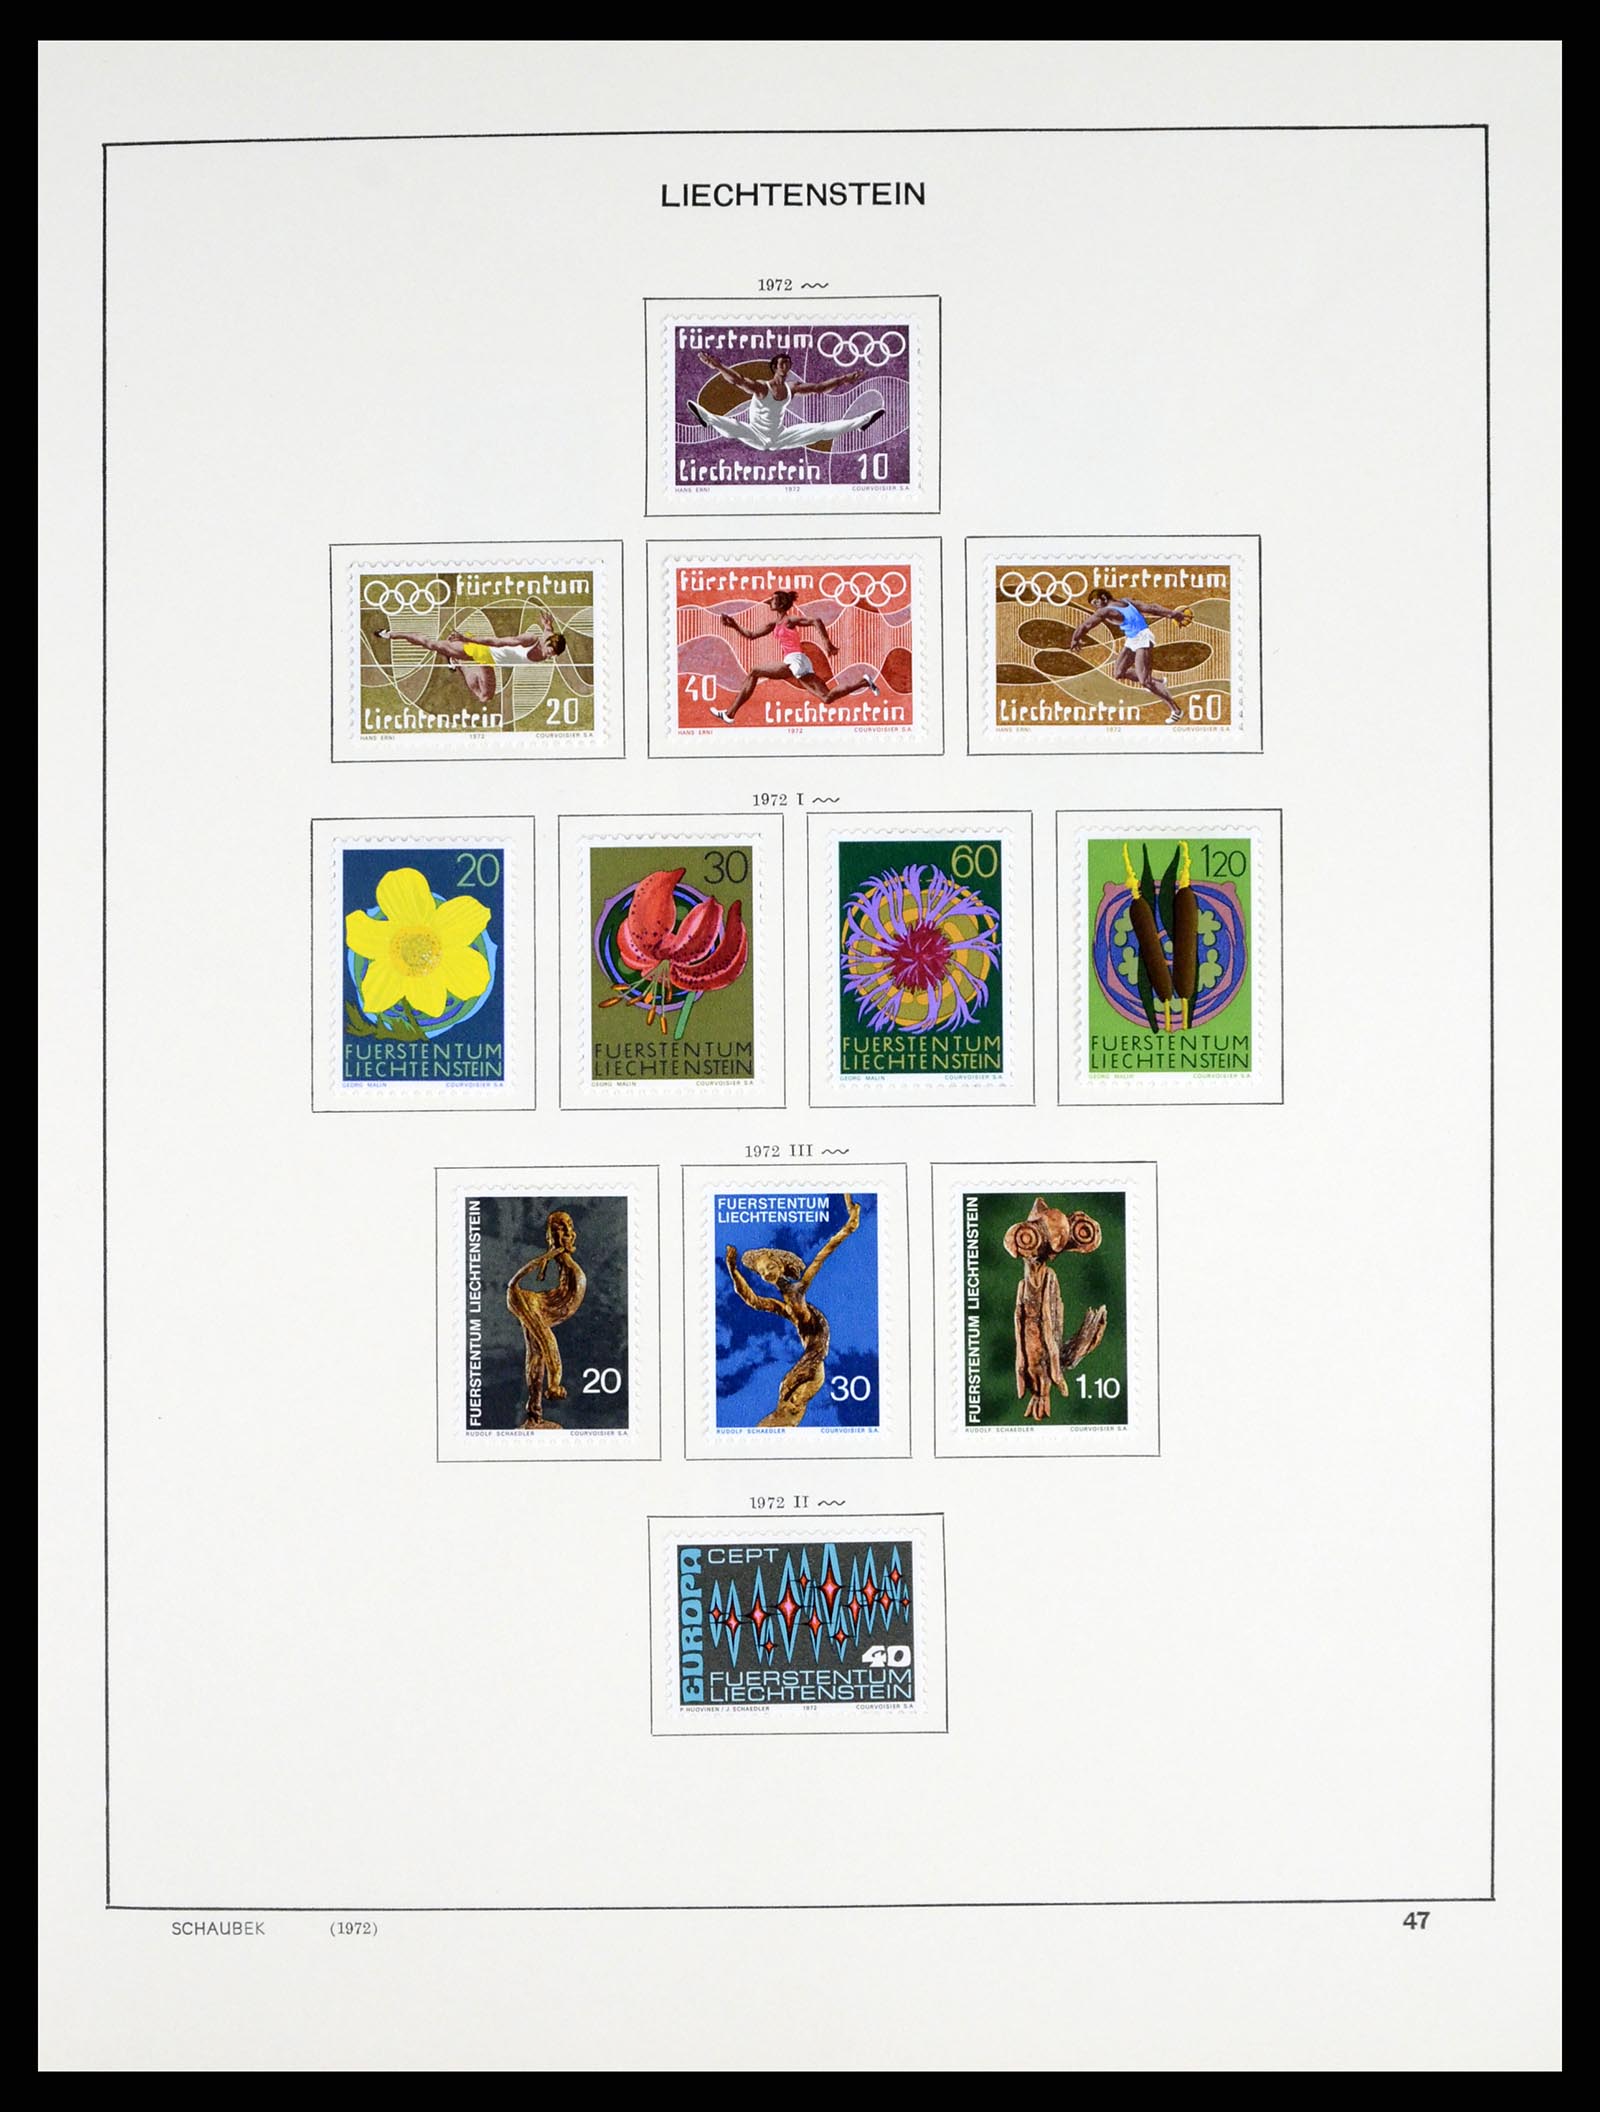 37547 058 - Postzegelverzameling 37547 Liechtenstein 1912-2011.